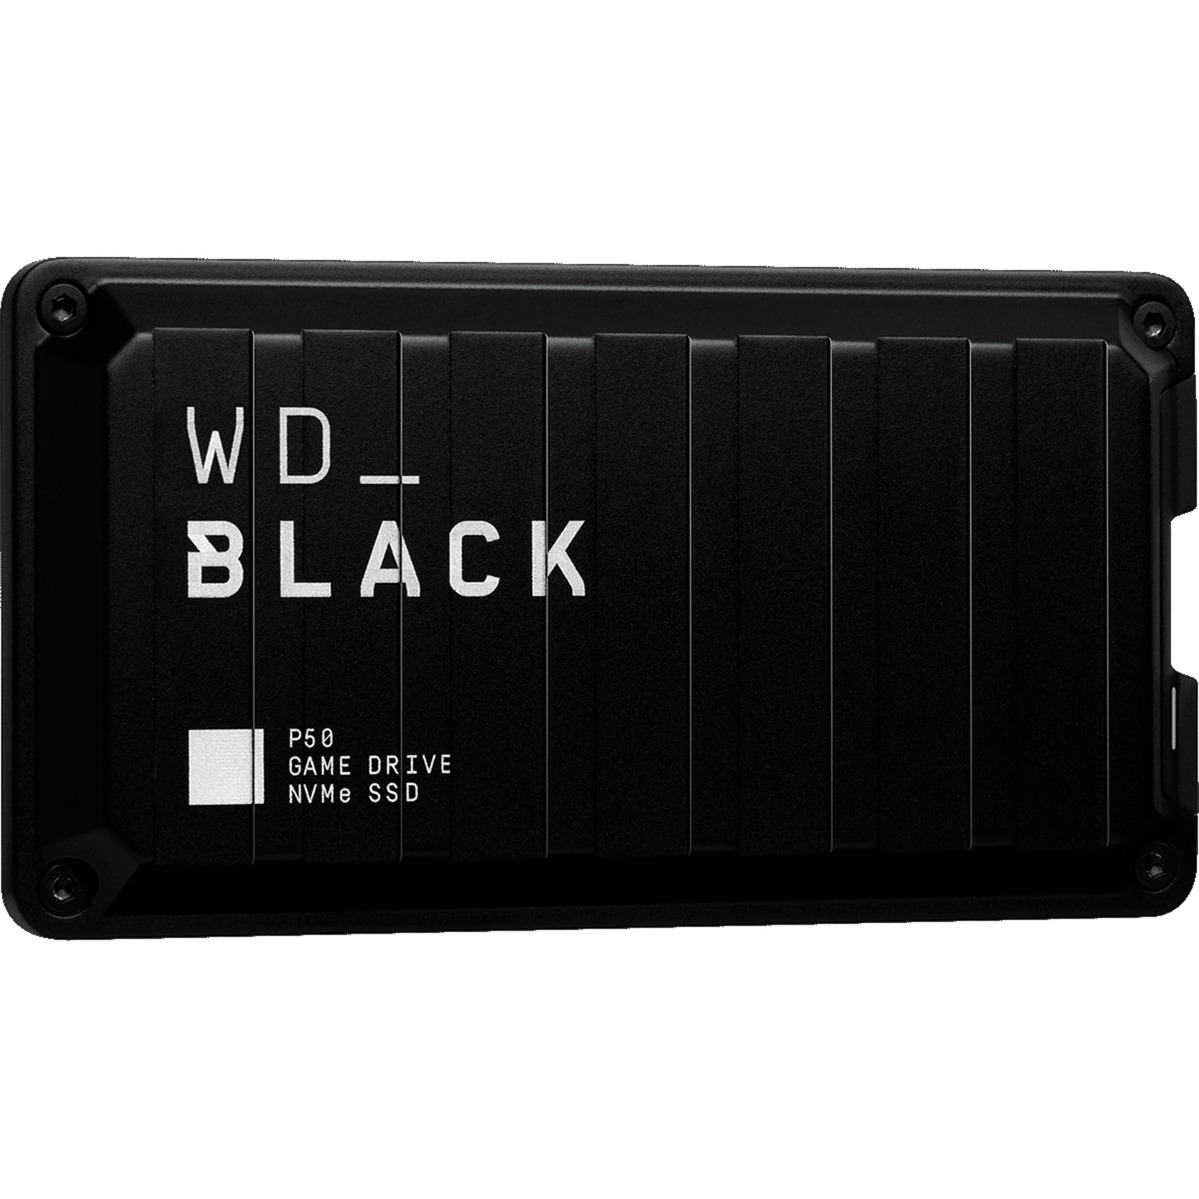 Image of Alternate - Black P50 Game Drive SSD 2 TB, Externe SSD online einkaufen bei Alternate